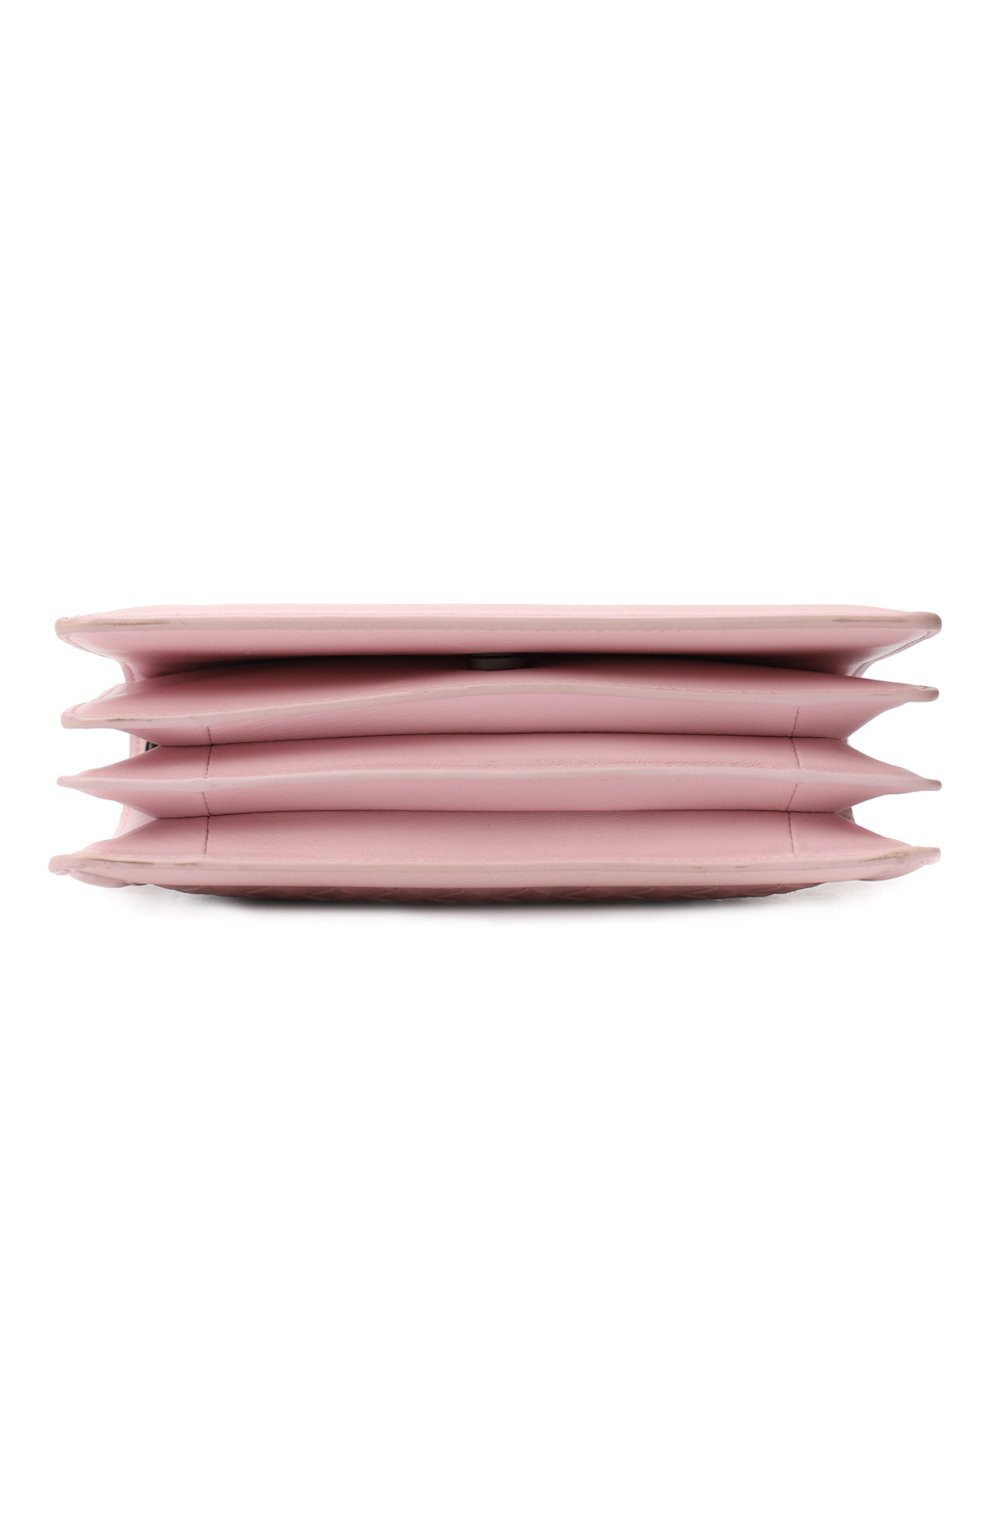 Кожаный клатч Montobello mini | Bottega Veneta | Розовый - 5